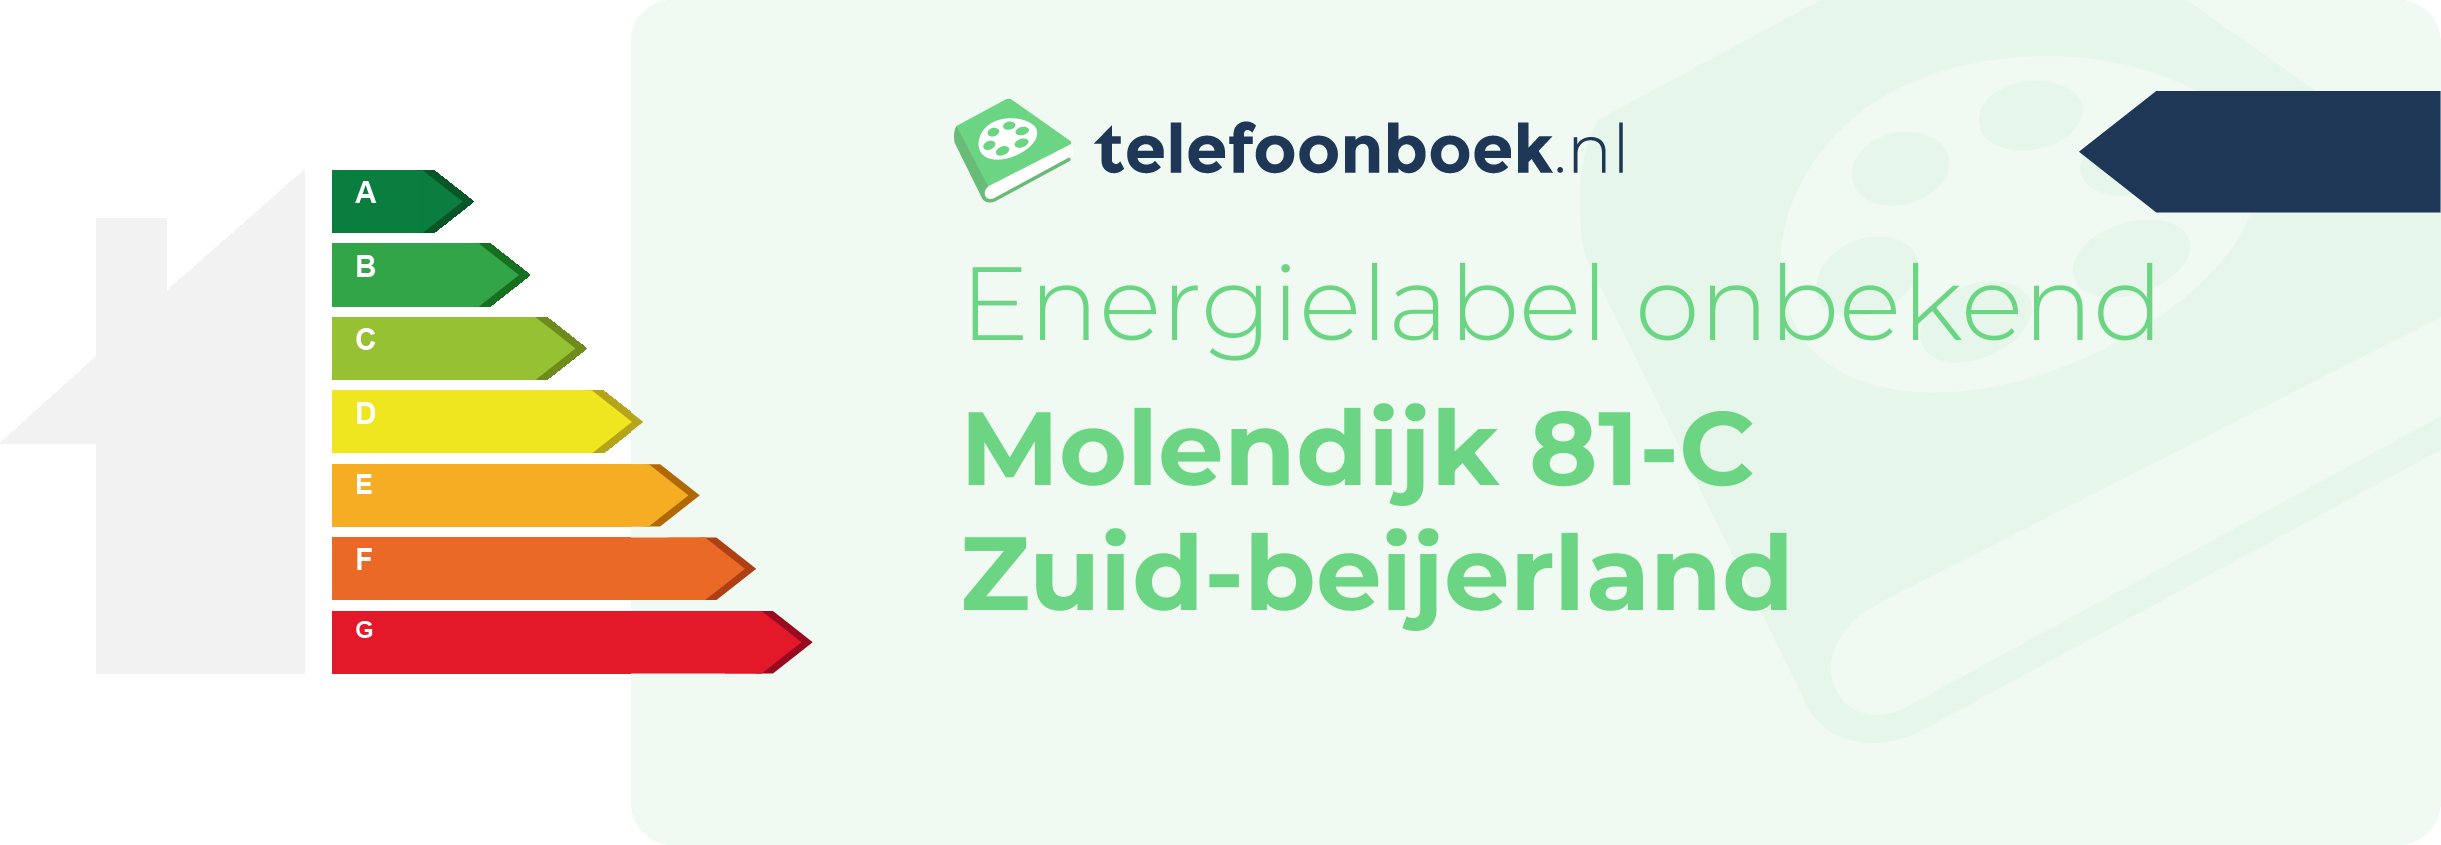 Energielabel Molendijk 81-C Zuid-Beijerland